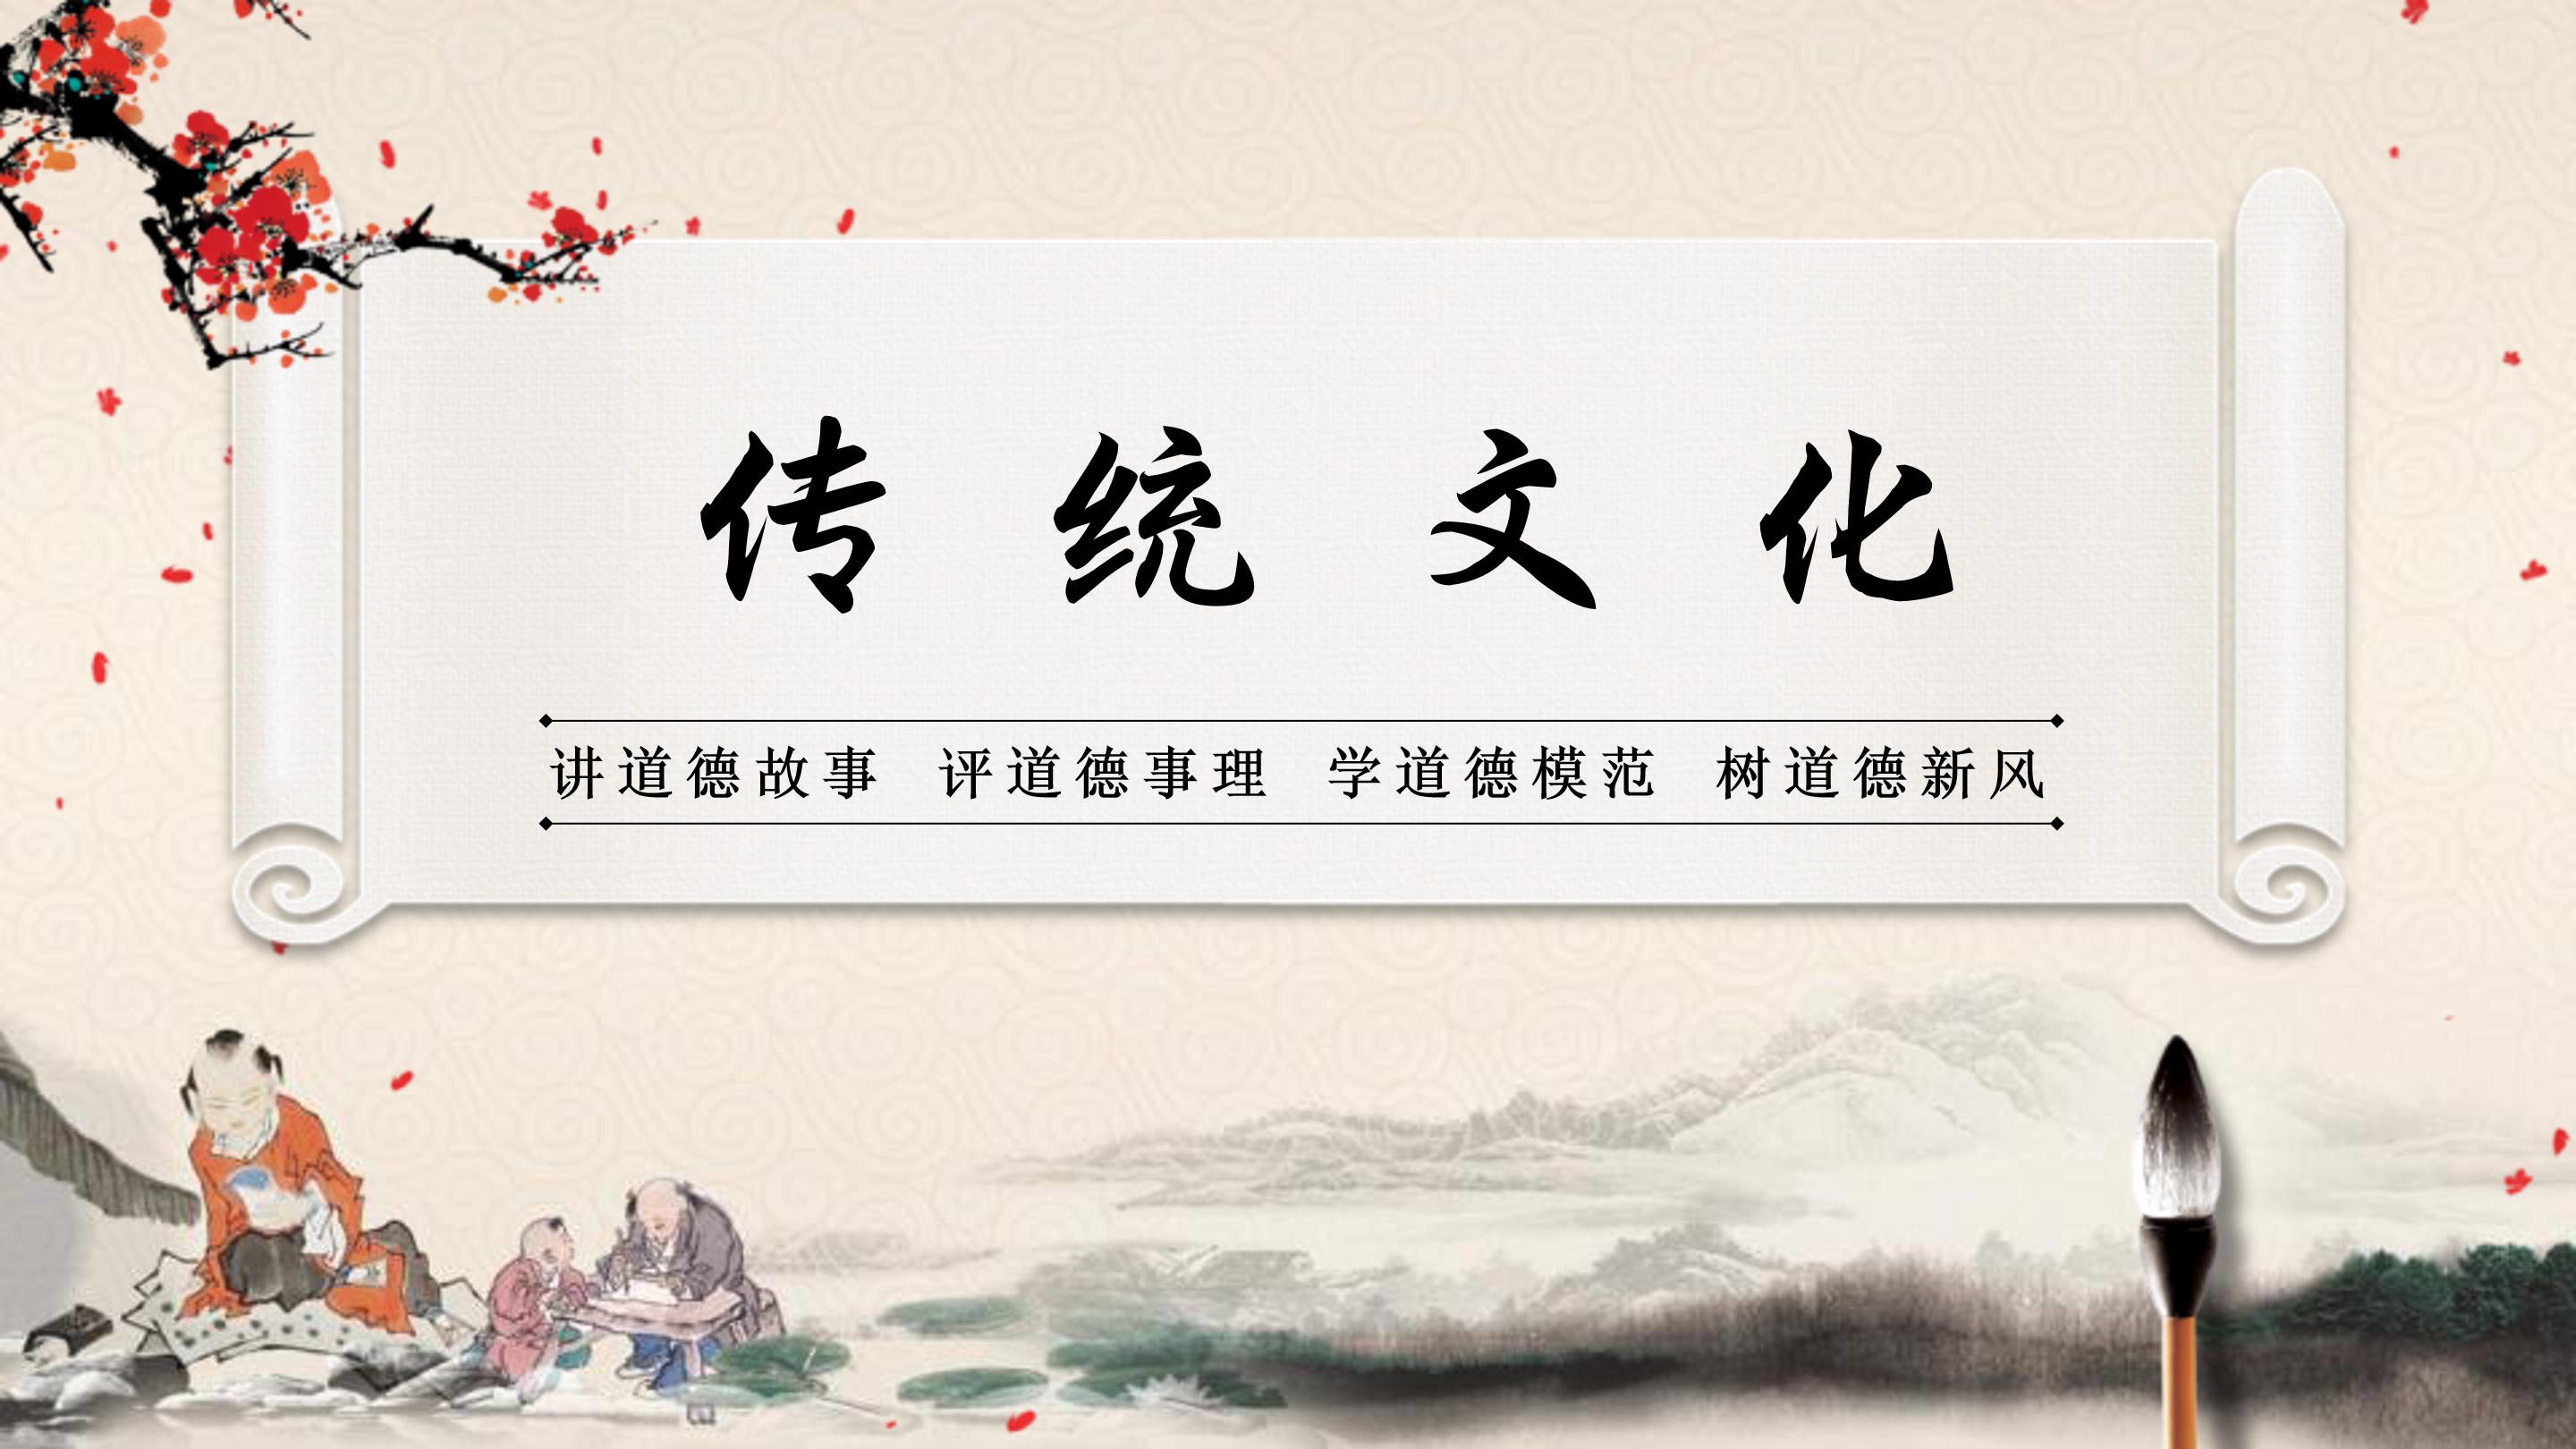 中国传统文化ppt模板下载-ppt家园